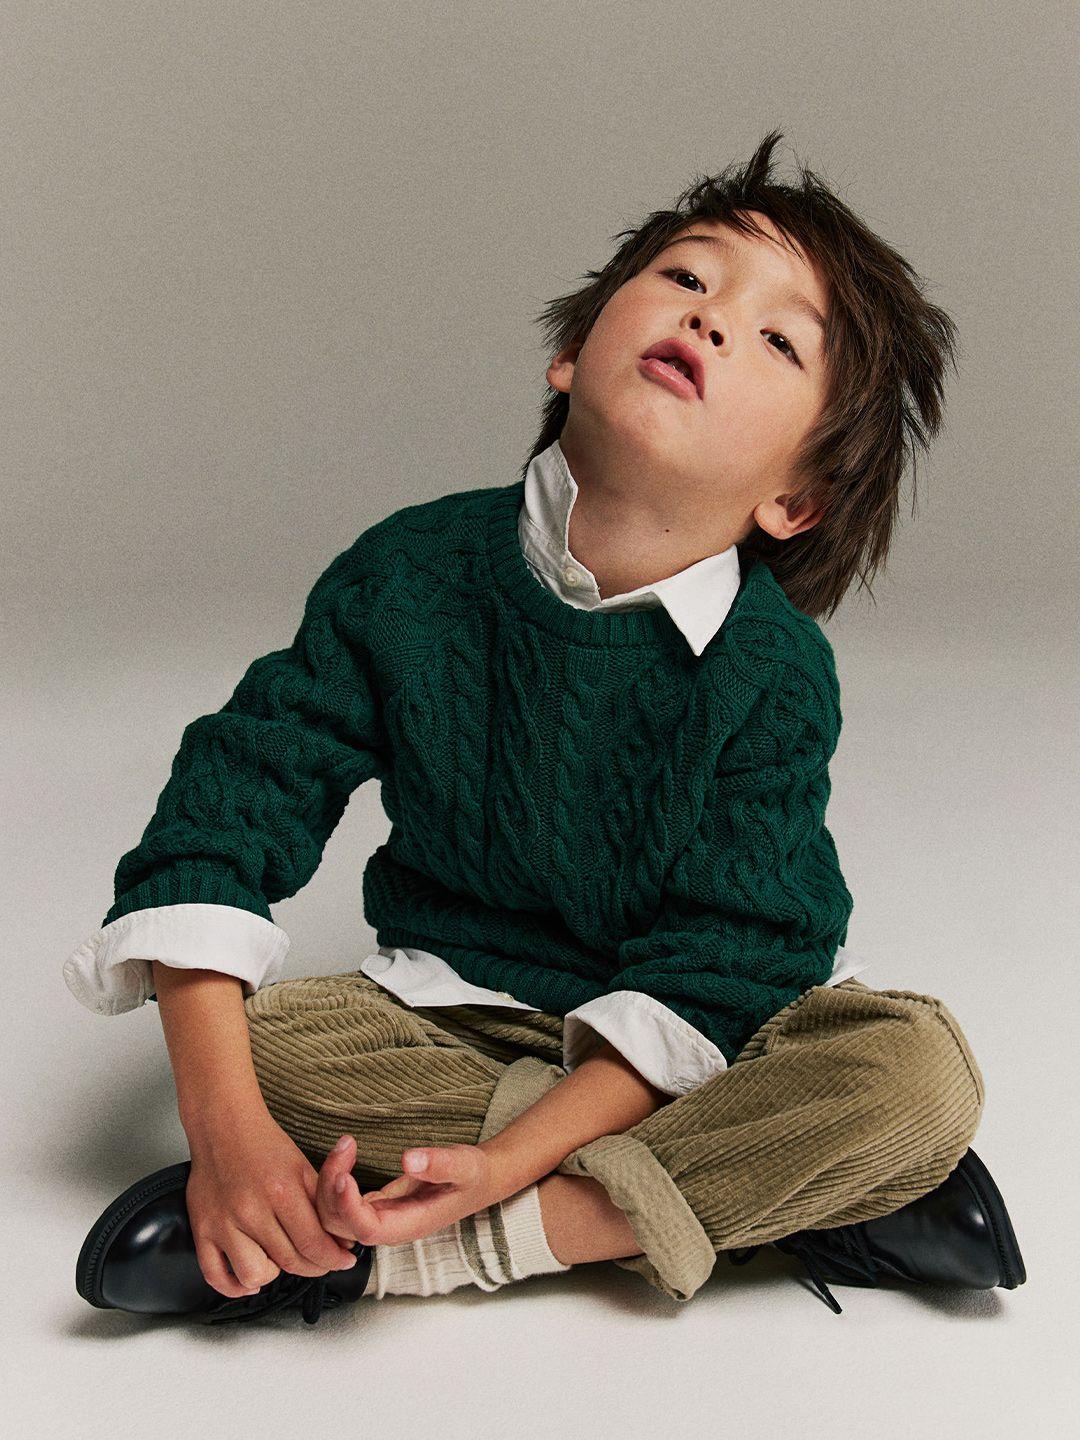 H&M Infant Boys Cable-Knit Pure Cotton Jumper